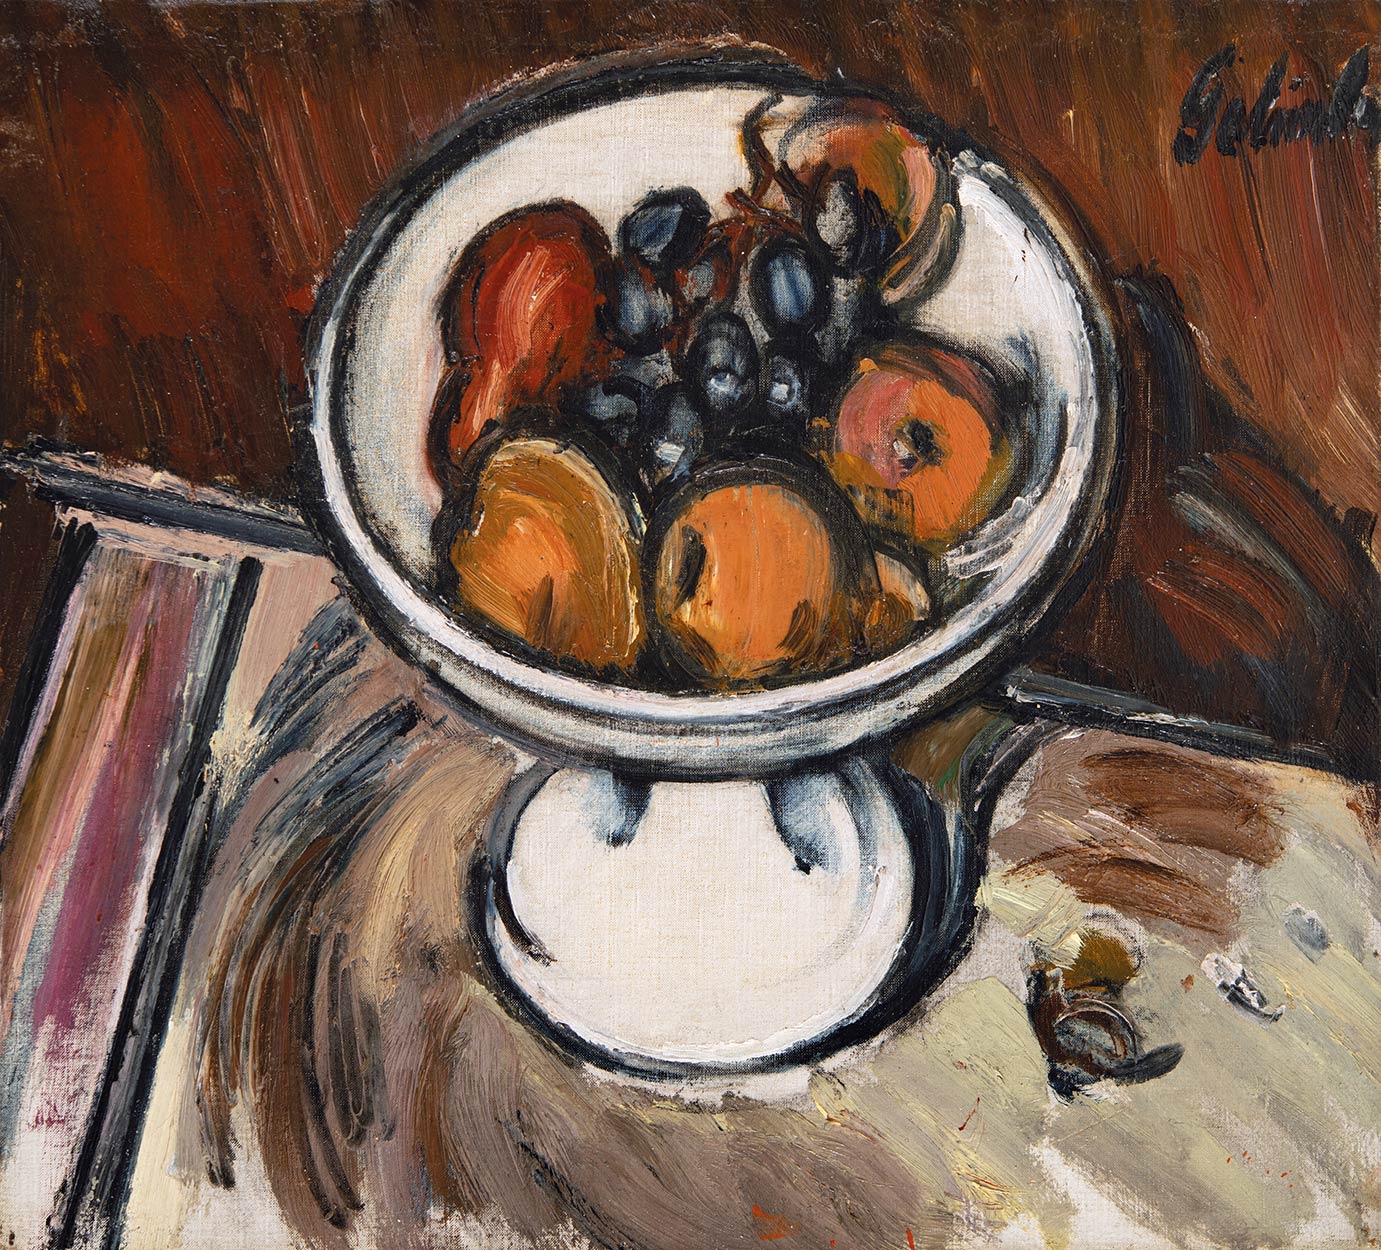 Galimberti Sándor (1883-1915) Apples, Paris, 1911